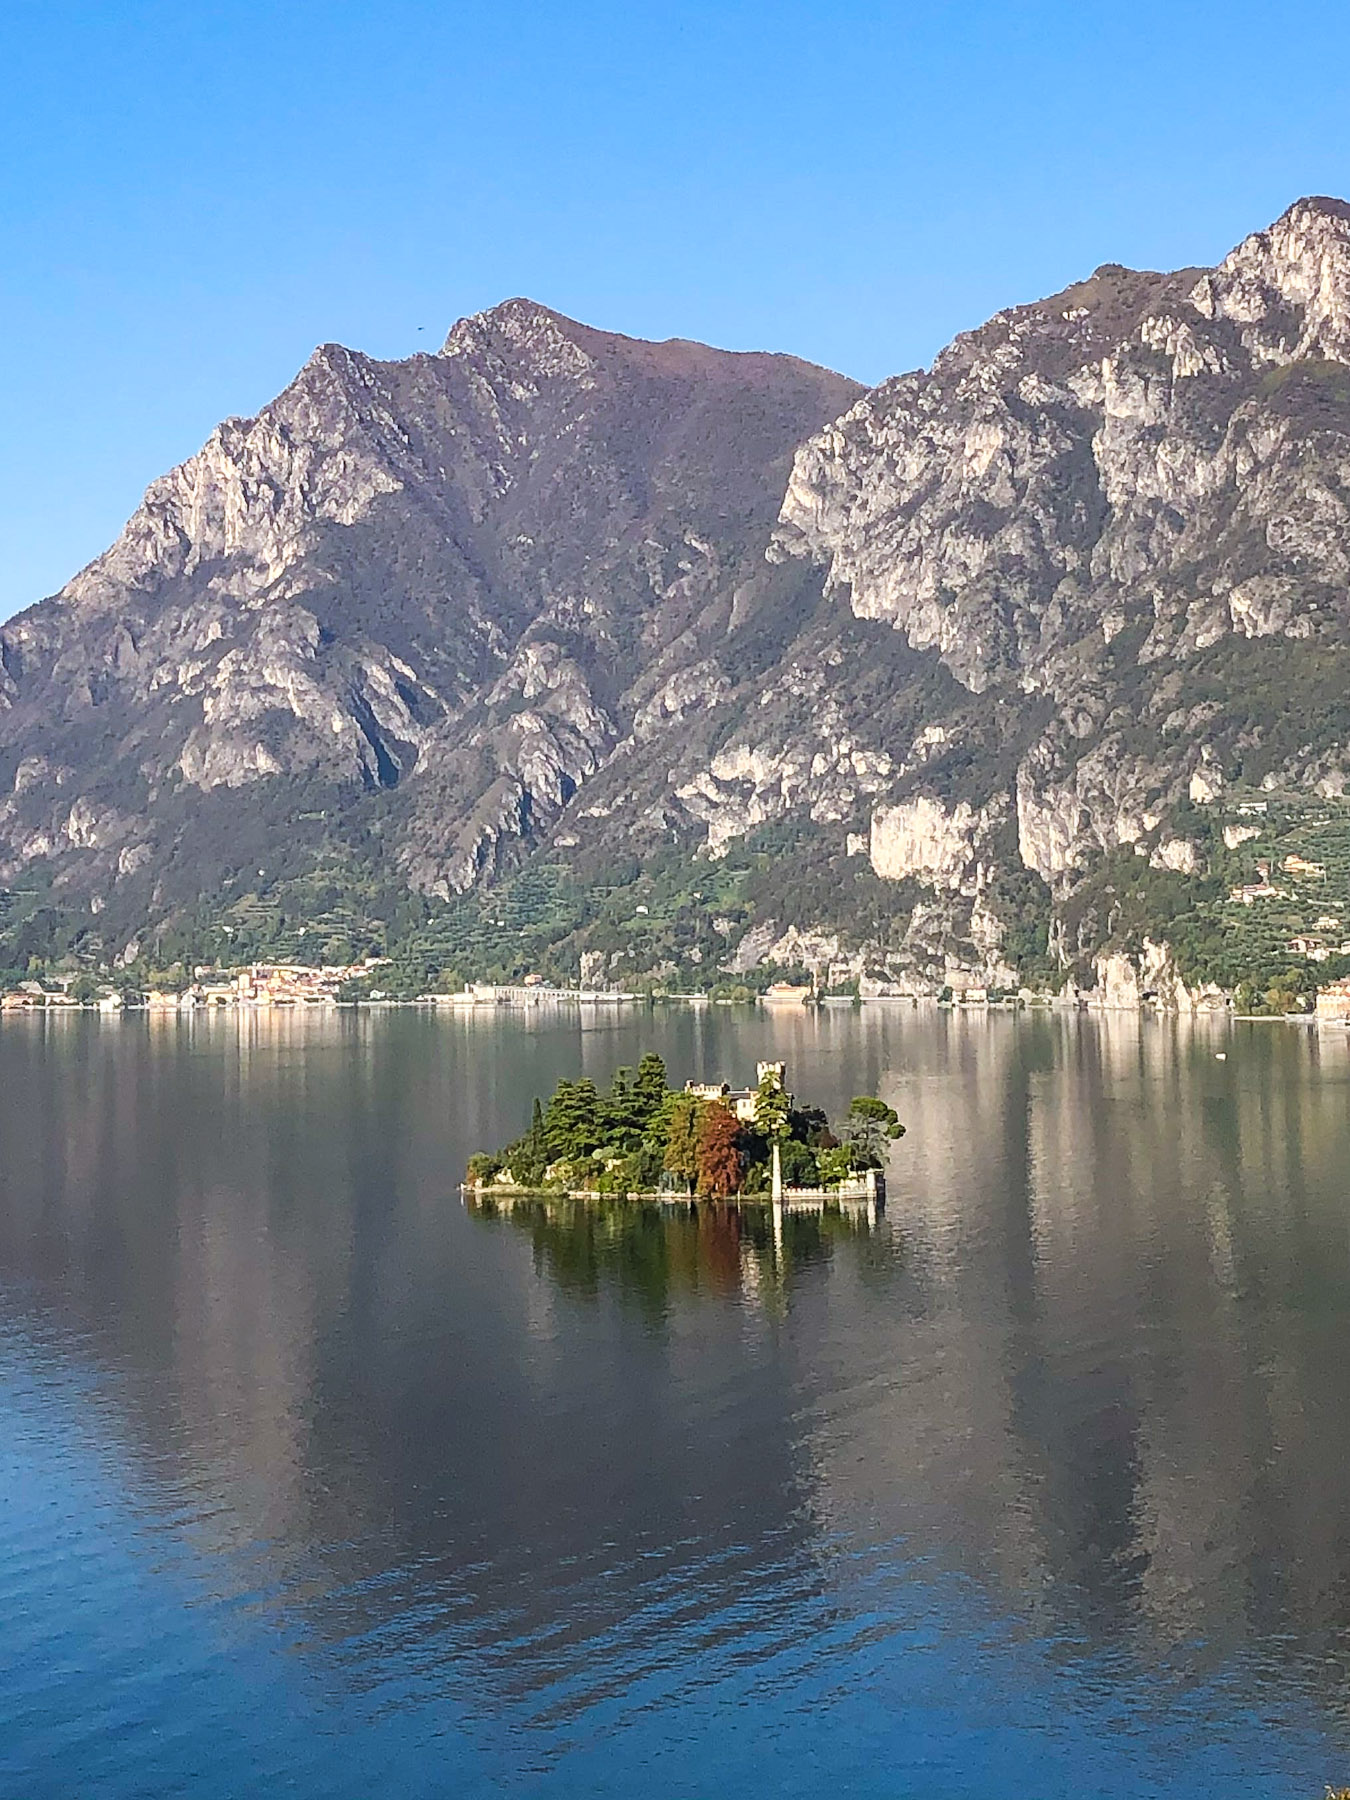 Isola di Loreto, Lago d'Iseo, Italy